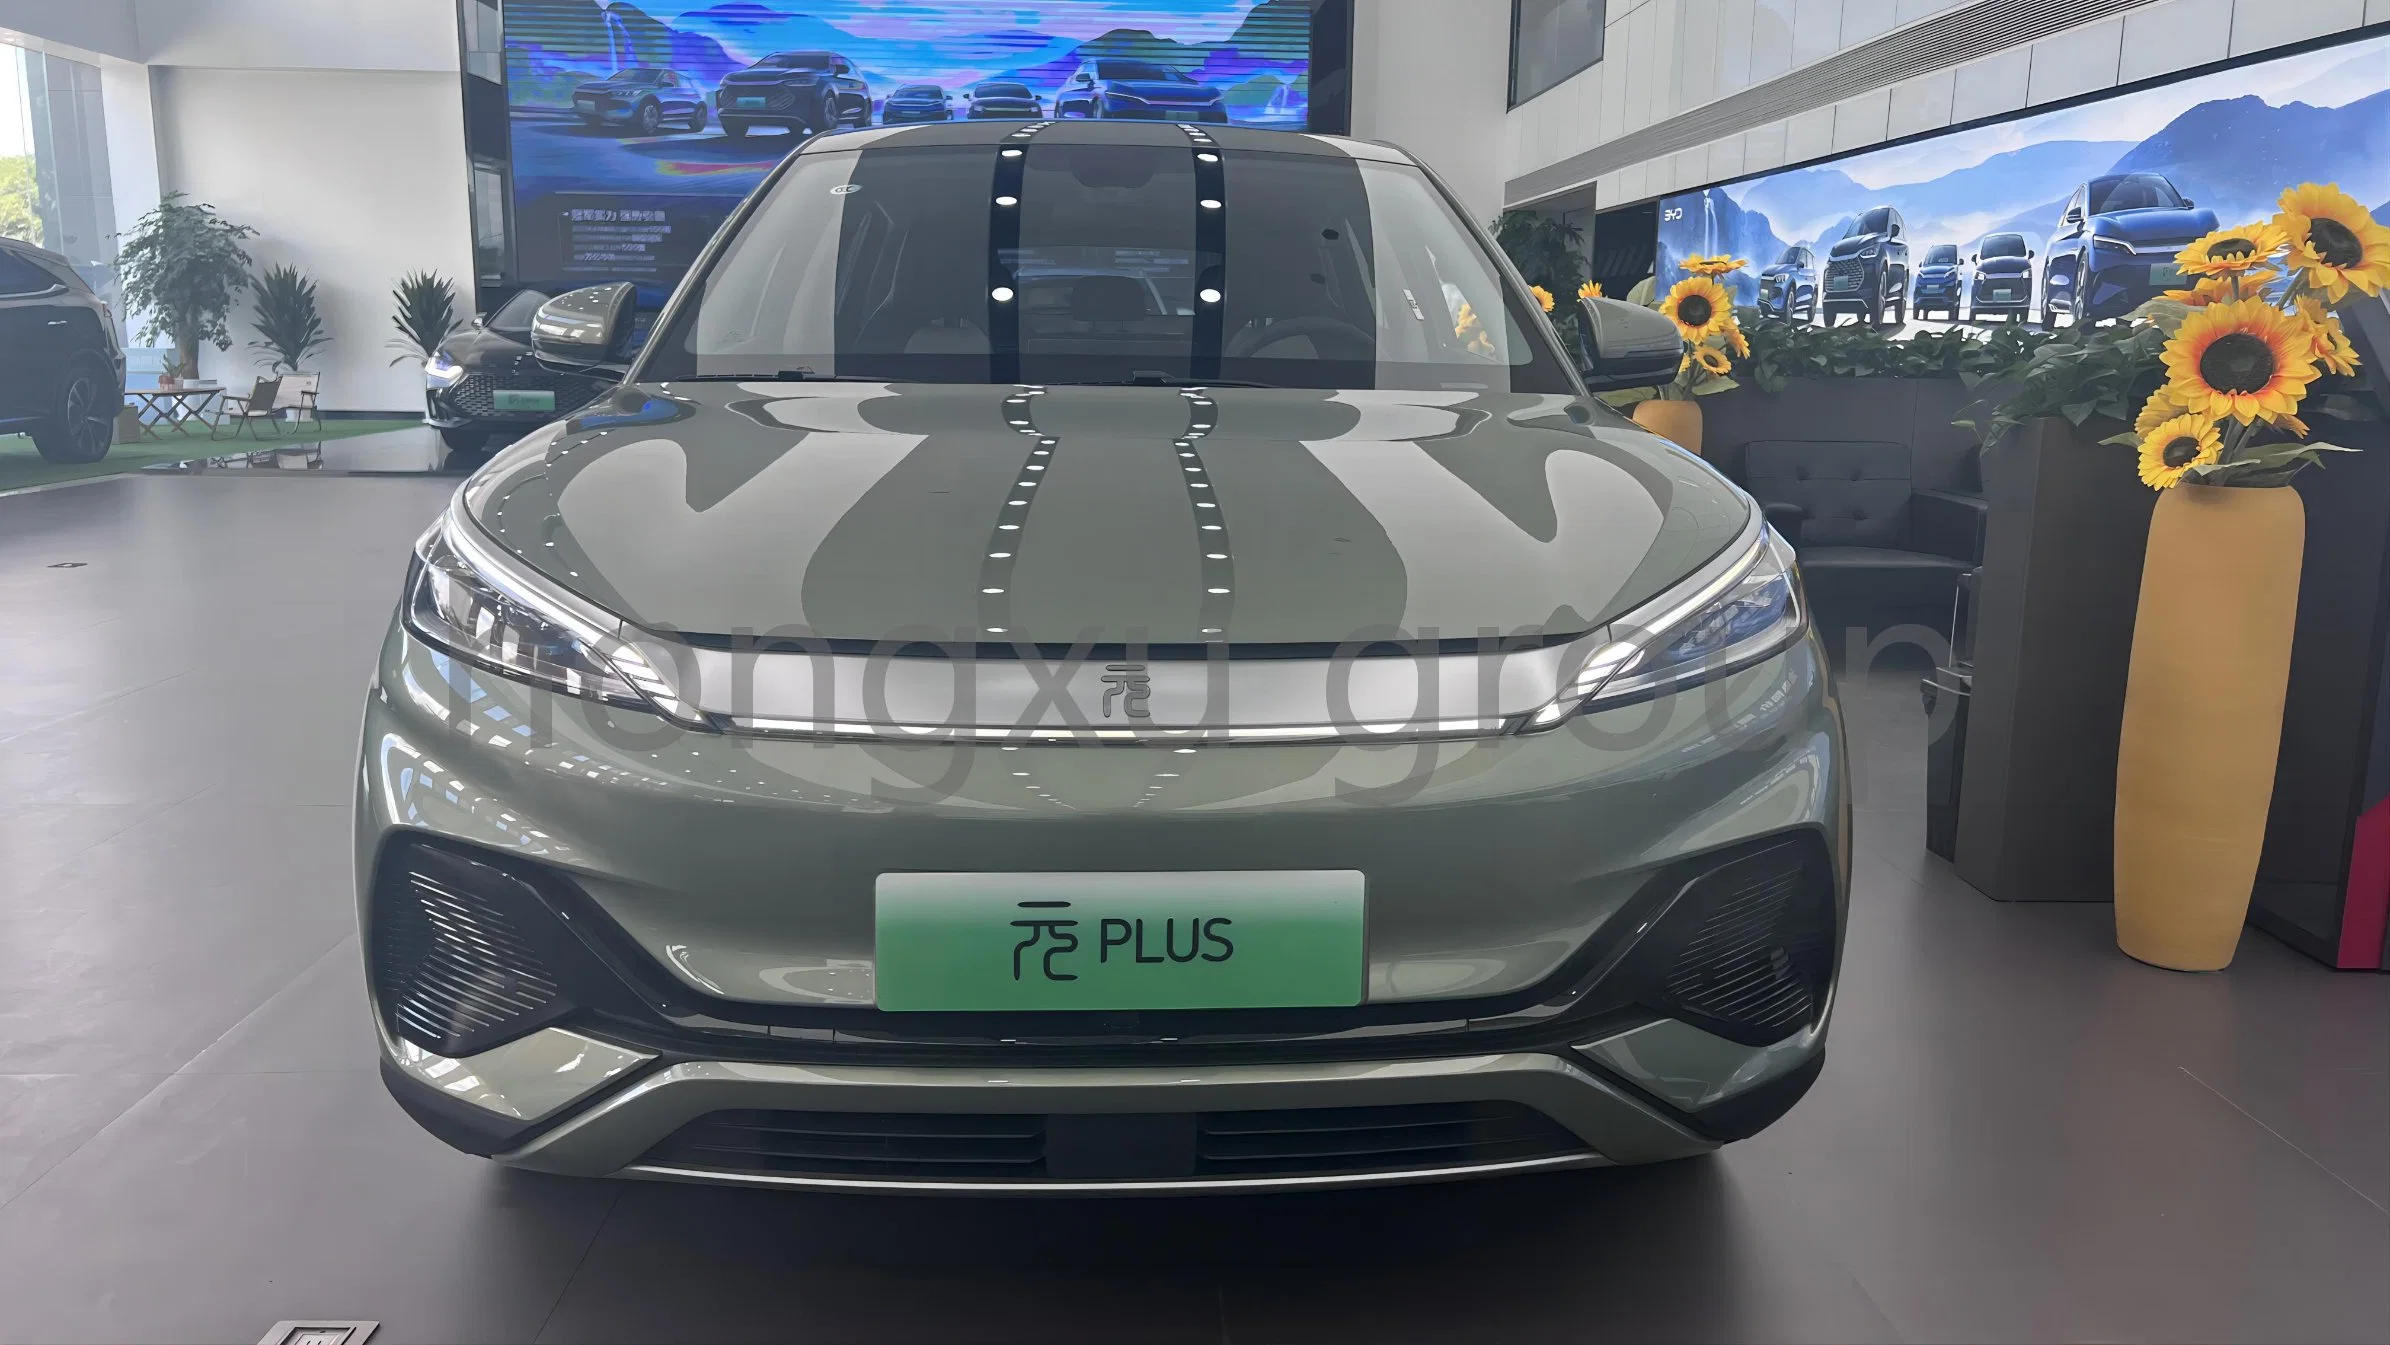 BYD Yuan Plus 510km Flagship coche usado con aire acondicionado Vehículo eléctrico para SUV pequeño fabricado en China usado eléctrico Coche Nuevo Precio Auto coche